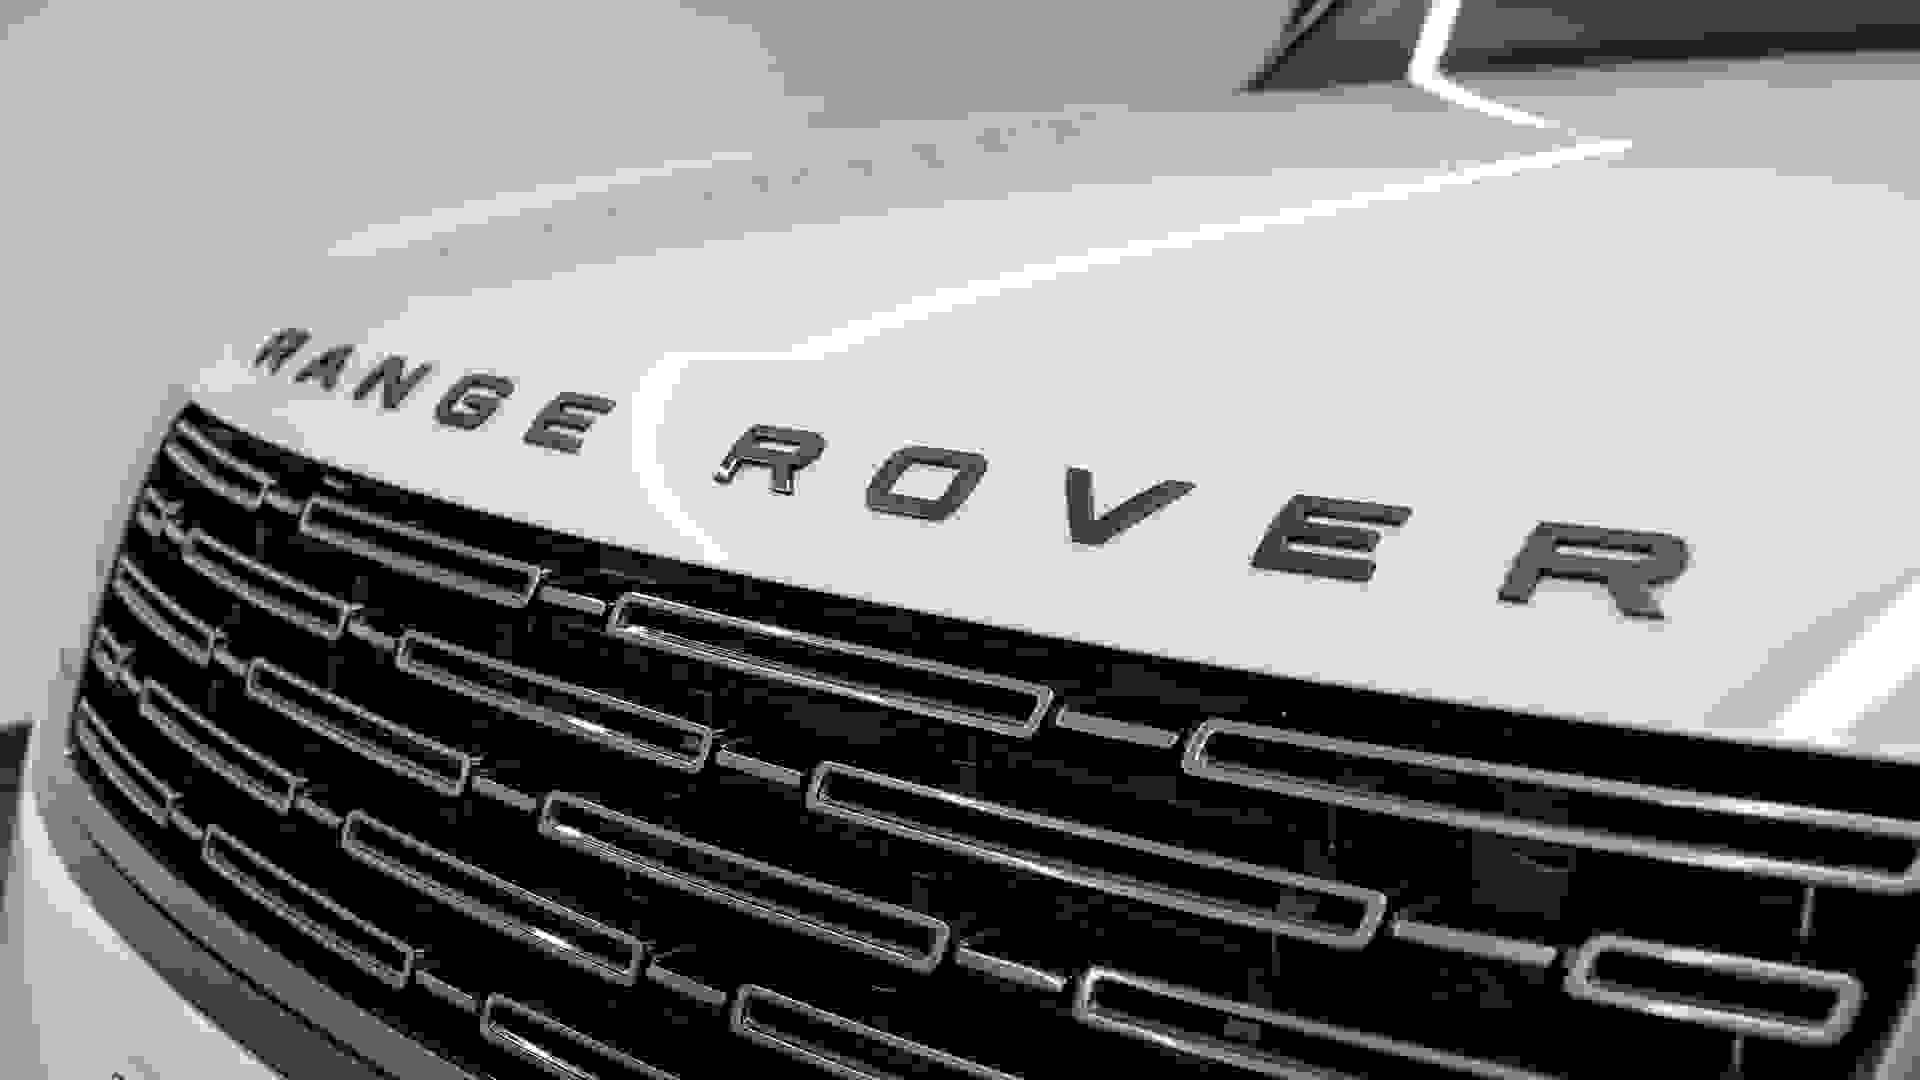 Land Rover Range Rover Photo 666d089e-7289-437f-9a92-95997ce2642d.jpg